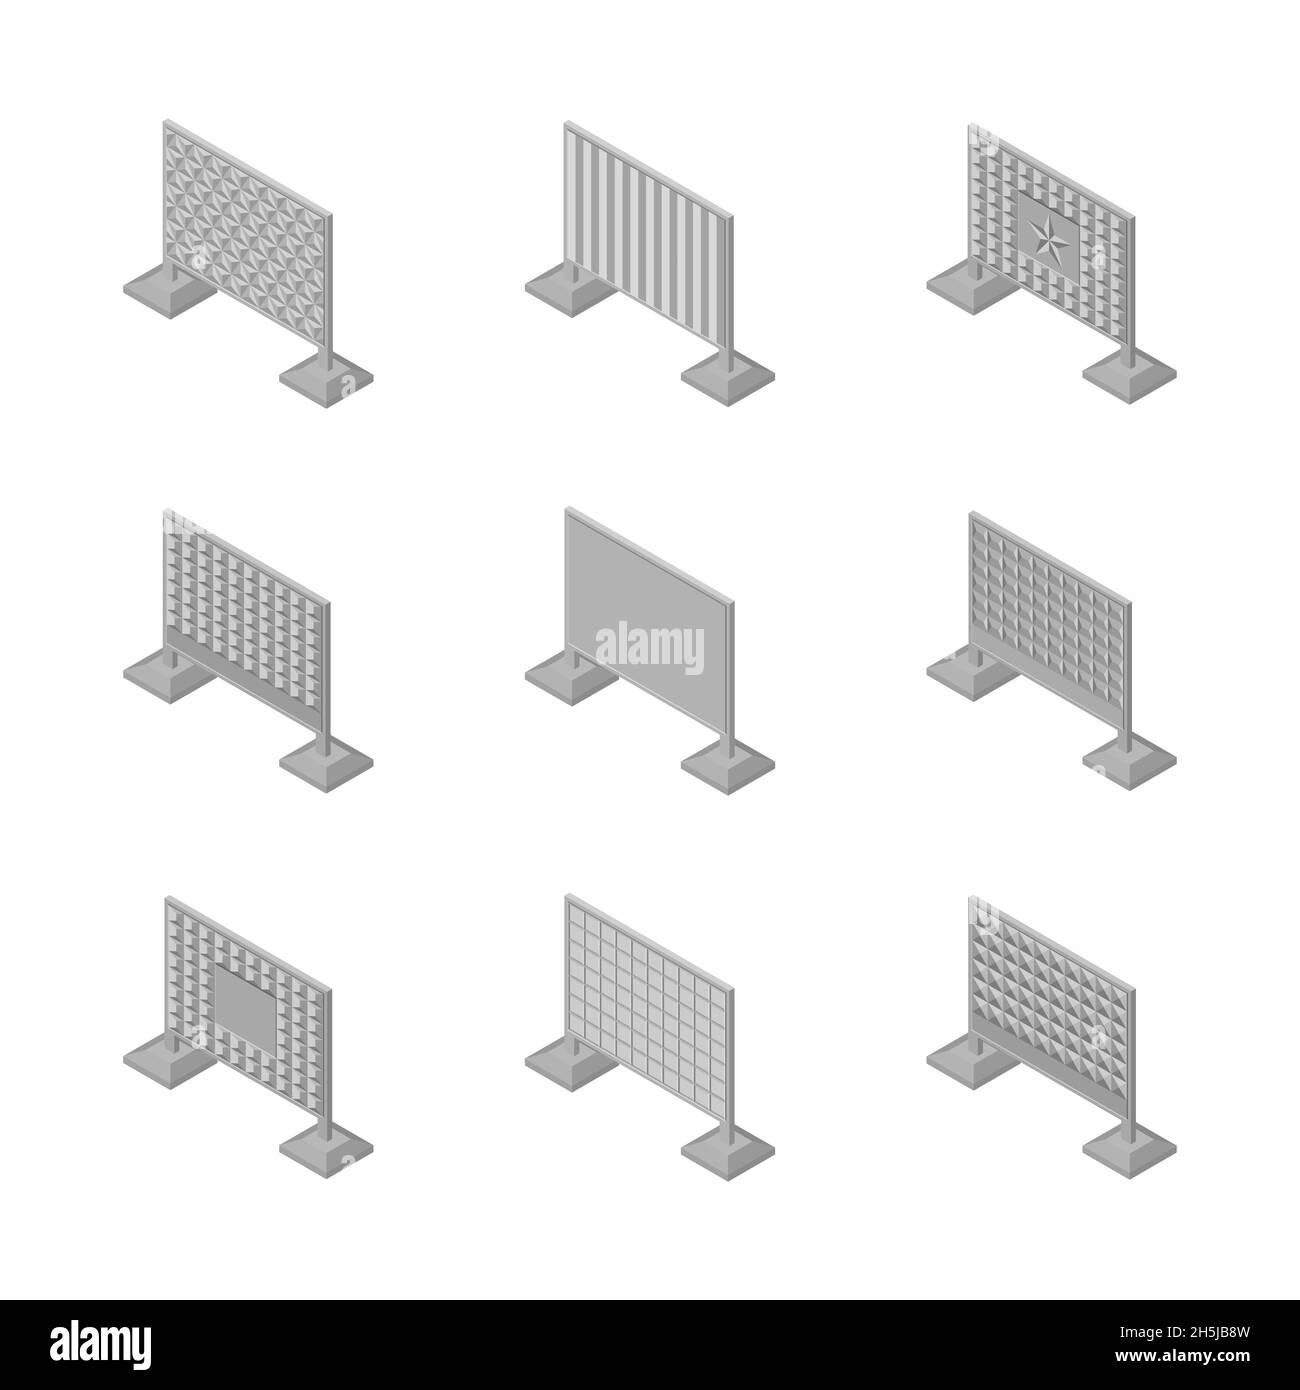 Satz von isometrischen spannt Betonzaun von verschiedenen Formen. Isoliert auf weißem Hintergrund. Elemente von Gebäuden und Landschaftsgestaltung, Vektordarstellung Stock Vektor